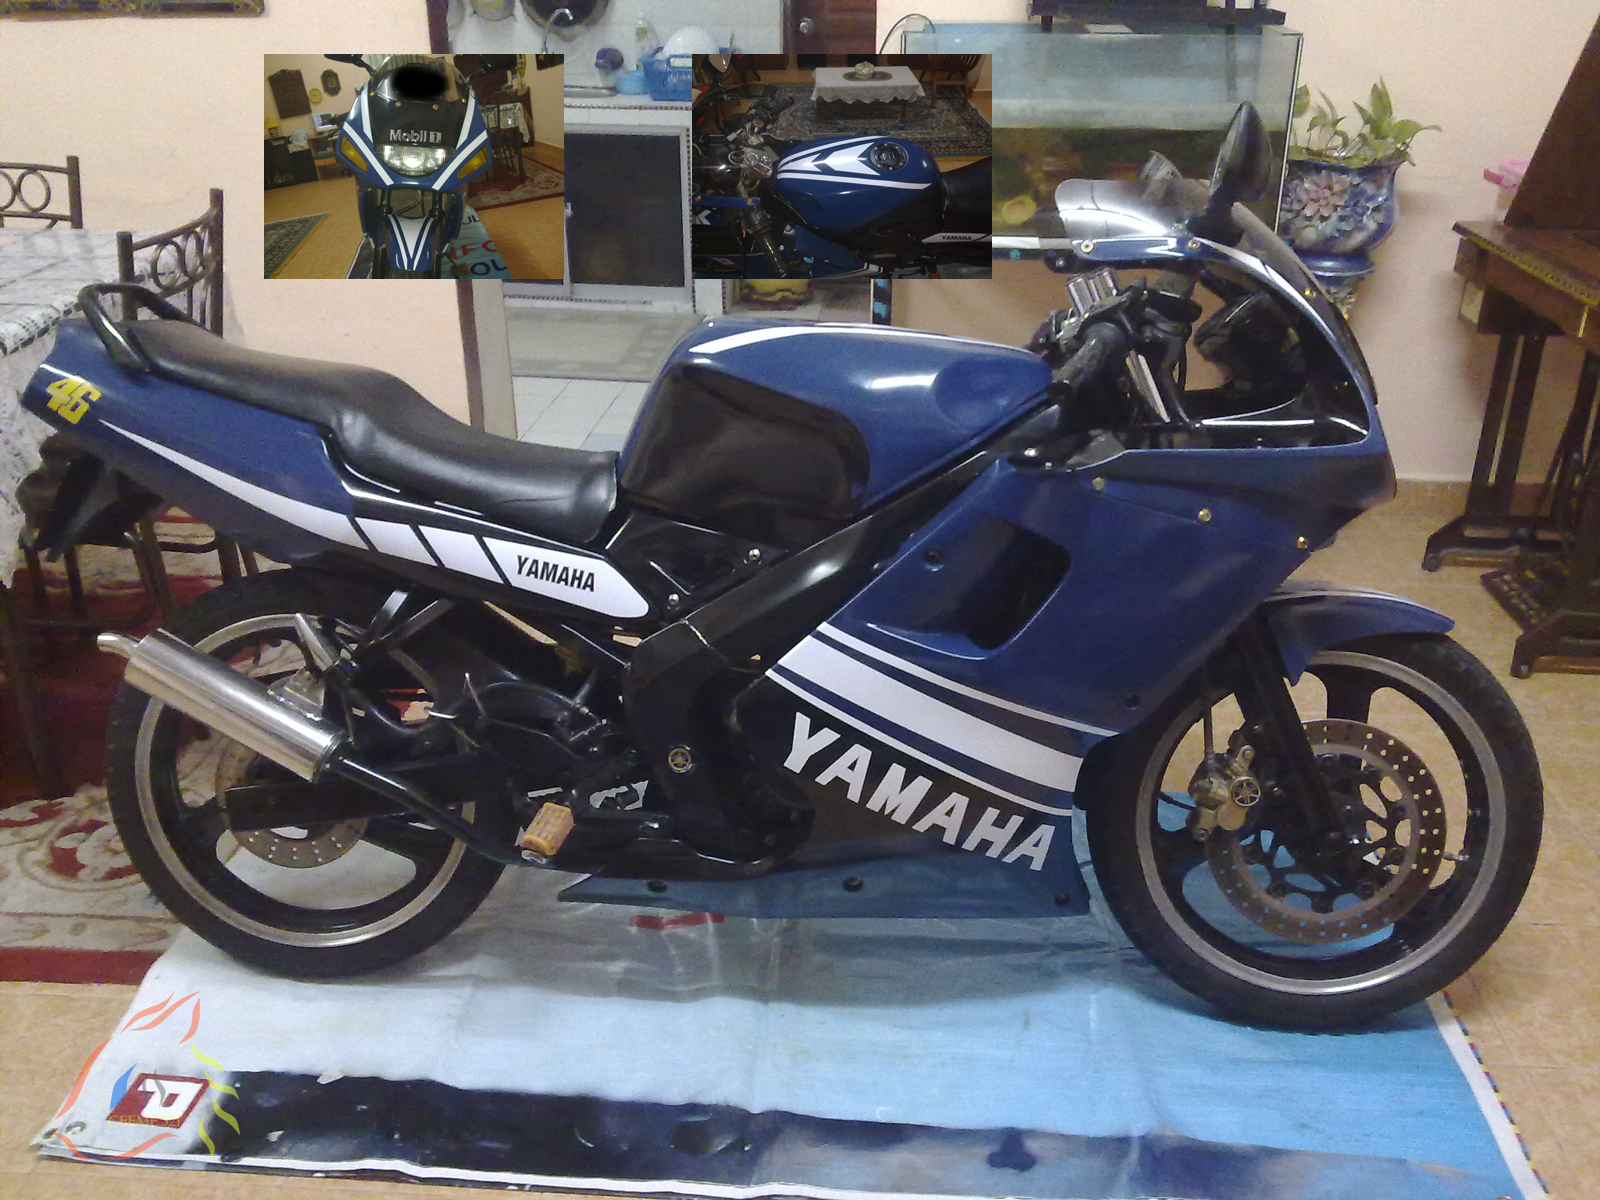 menanti-motor-sport-250cc-dari-yamaha-varian-full-fairing-dan-streetfighter